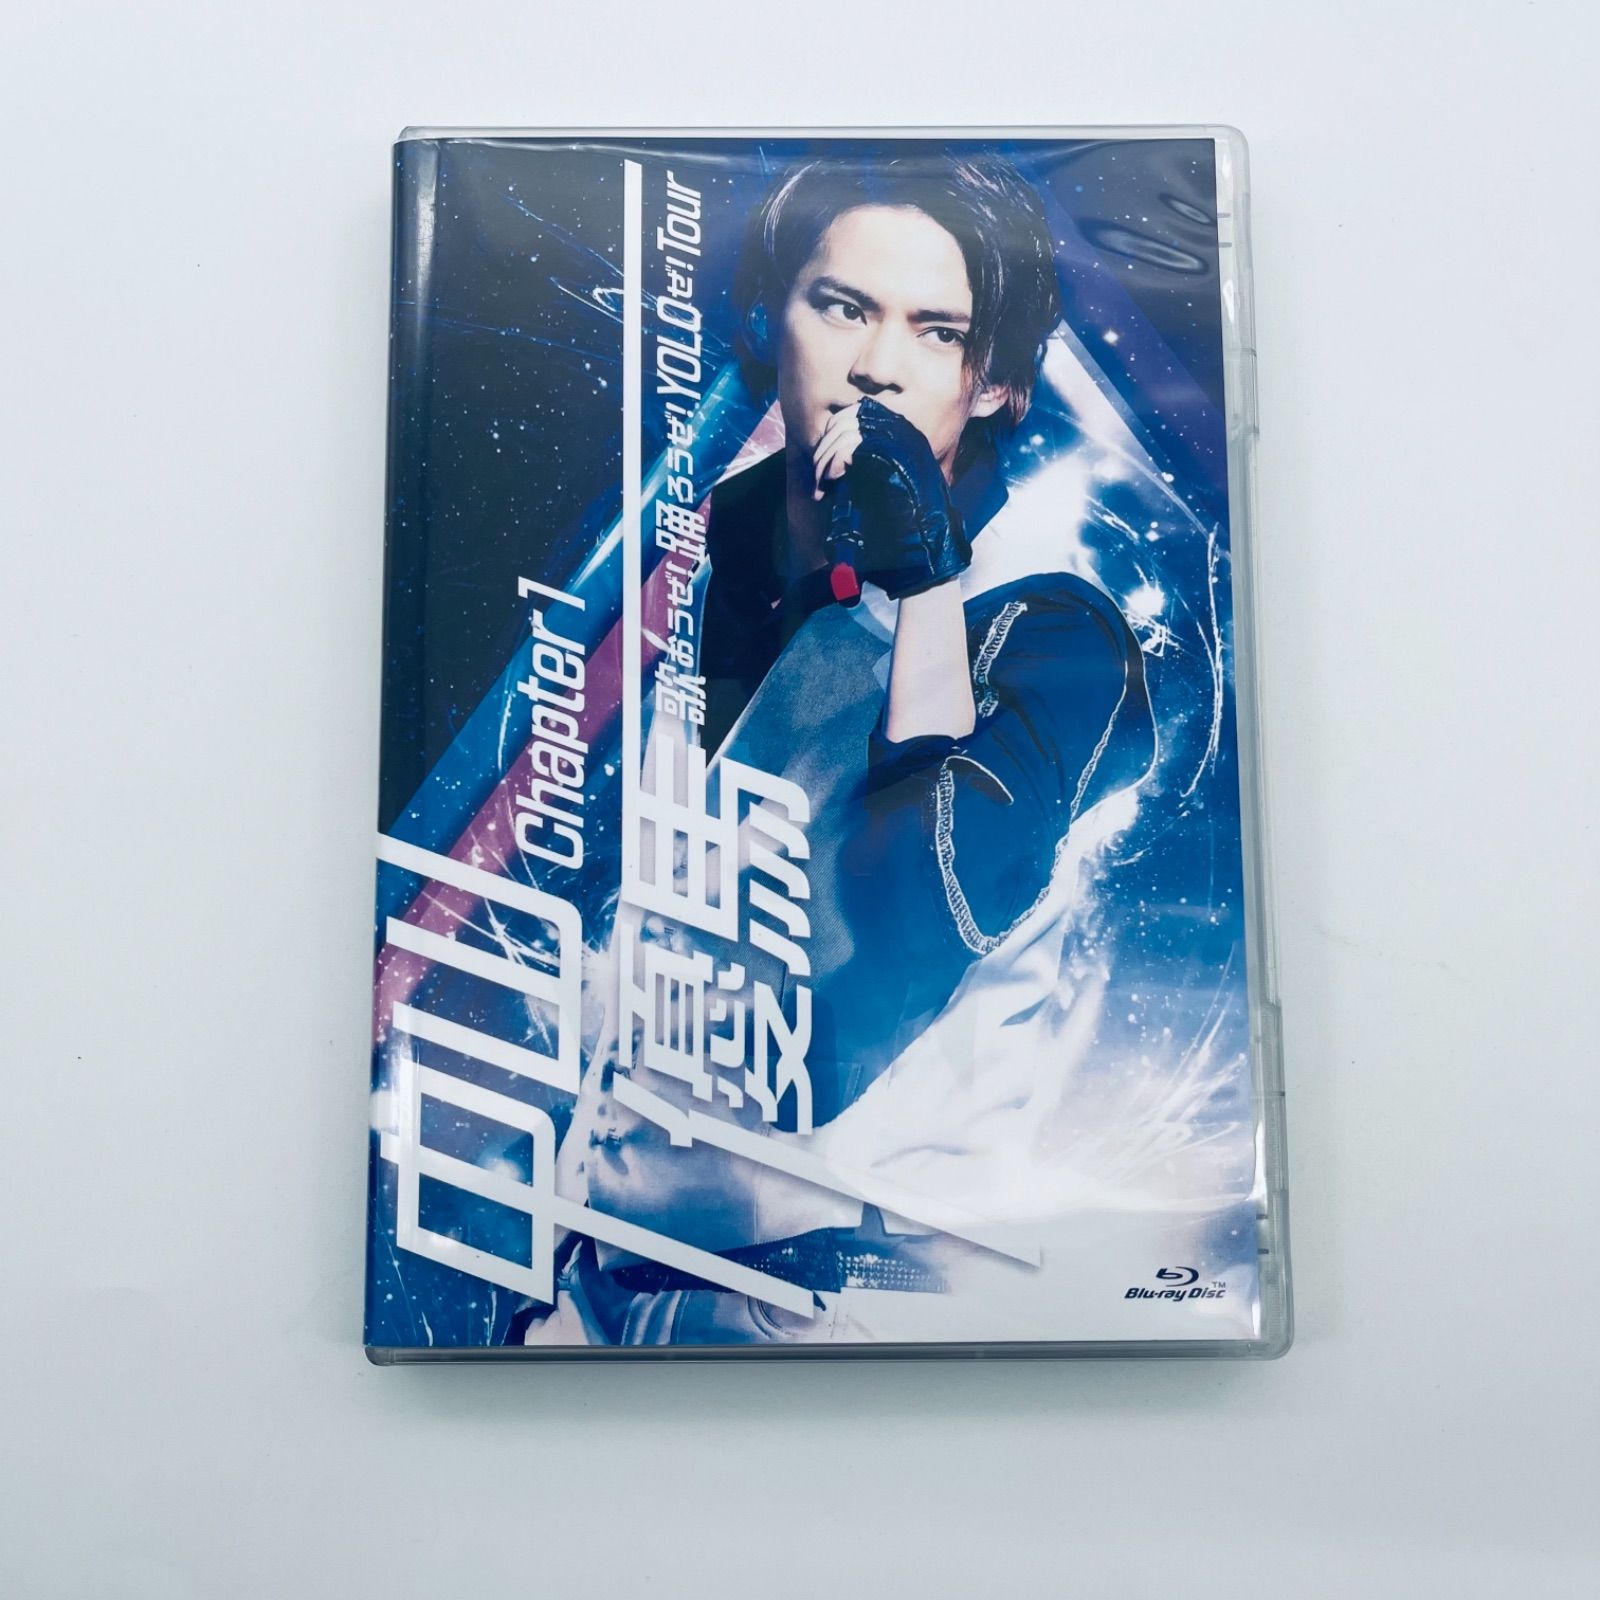 中山優馬 1stライブ デラックス盤 Blu-ray